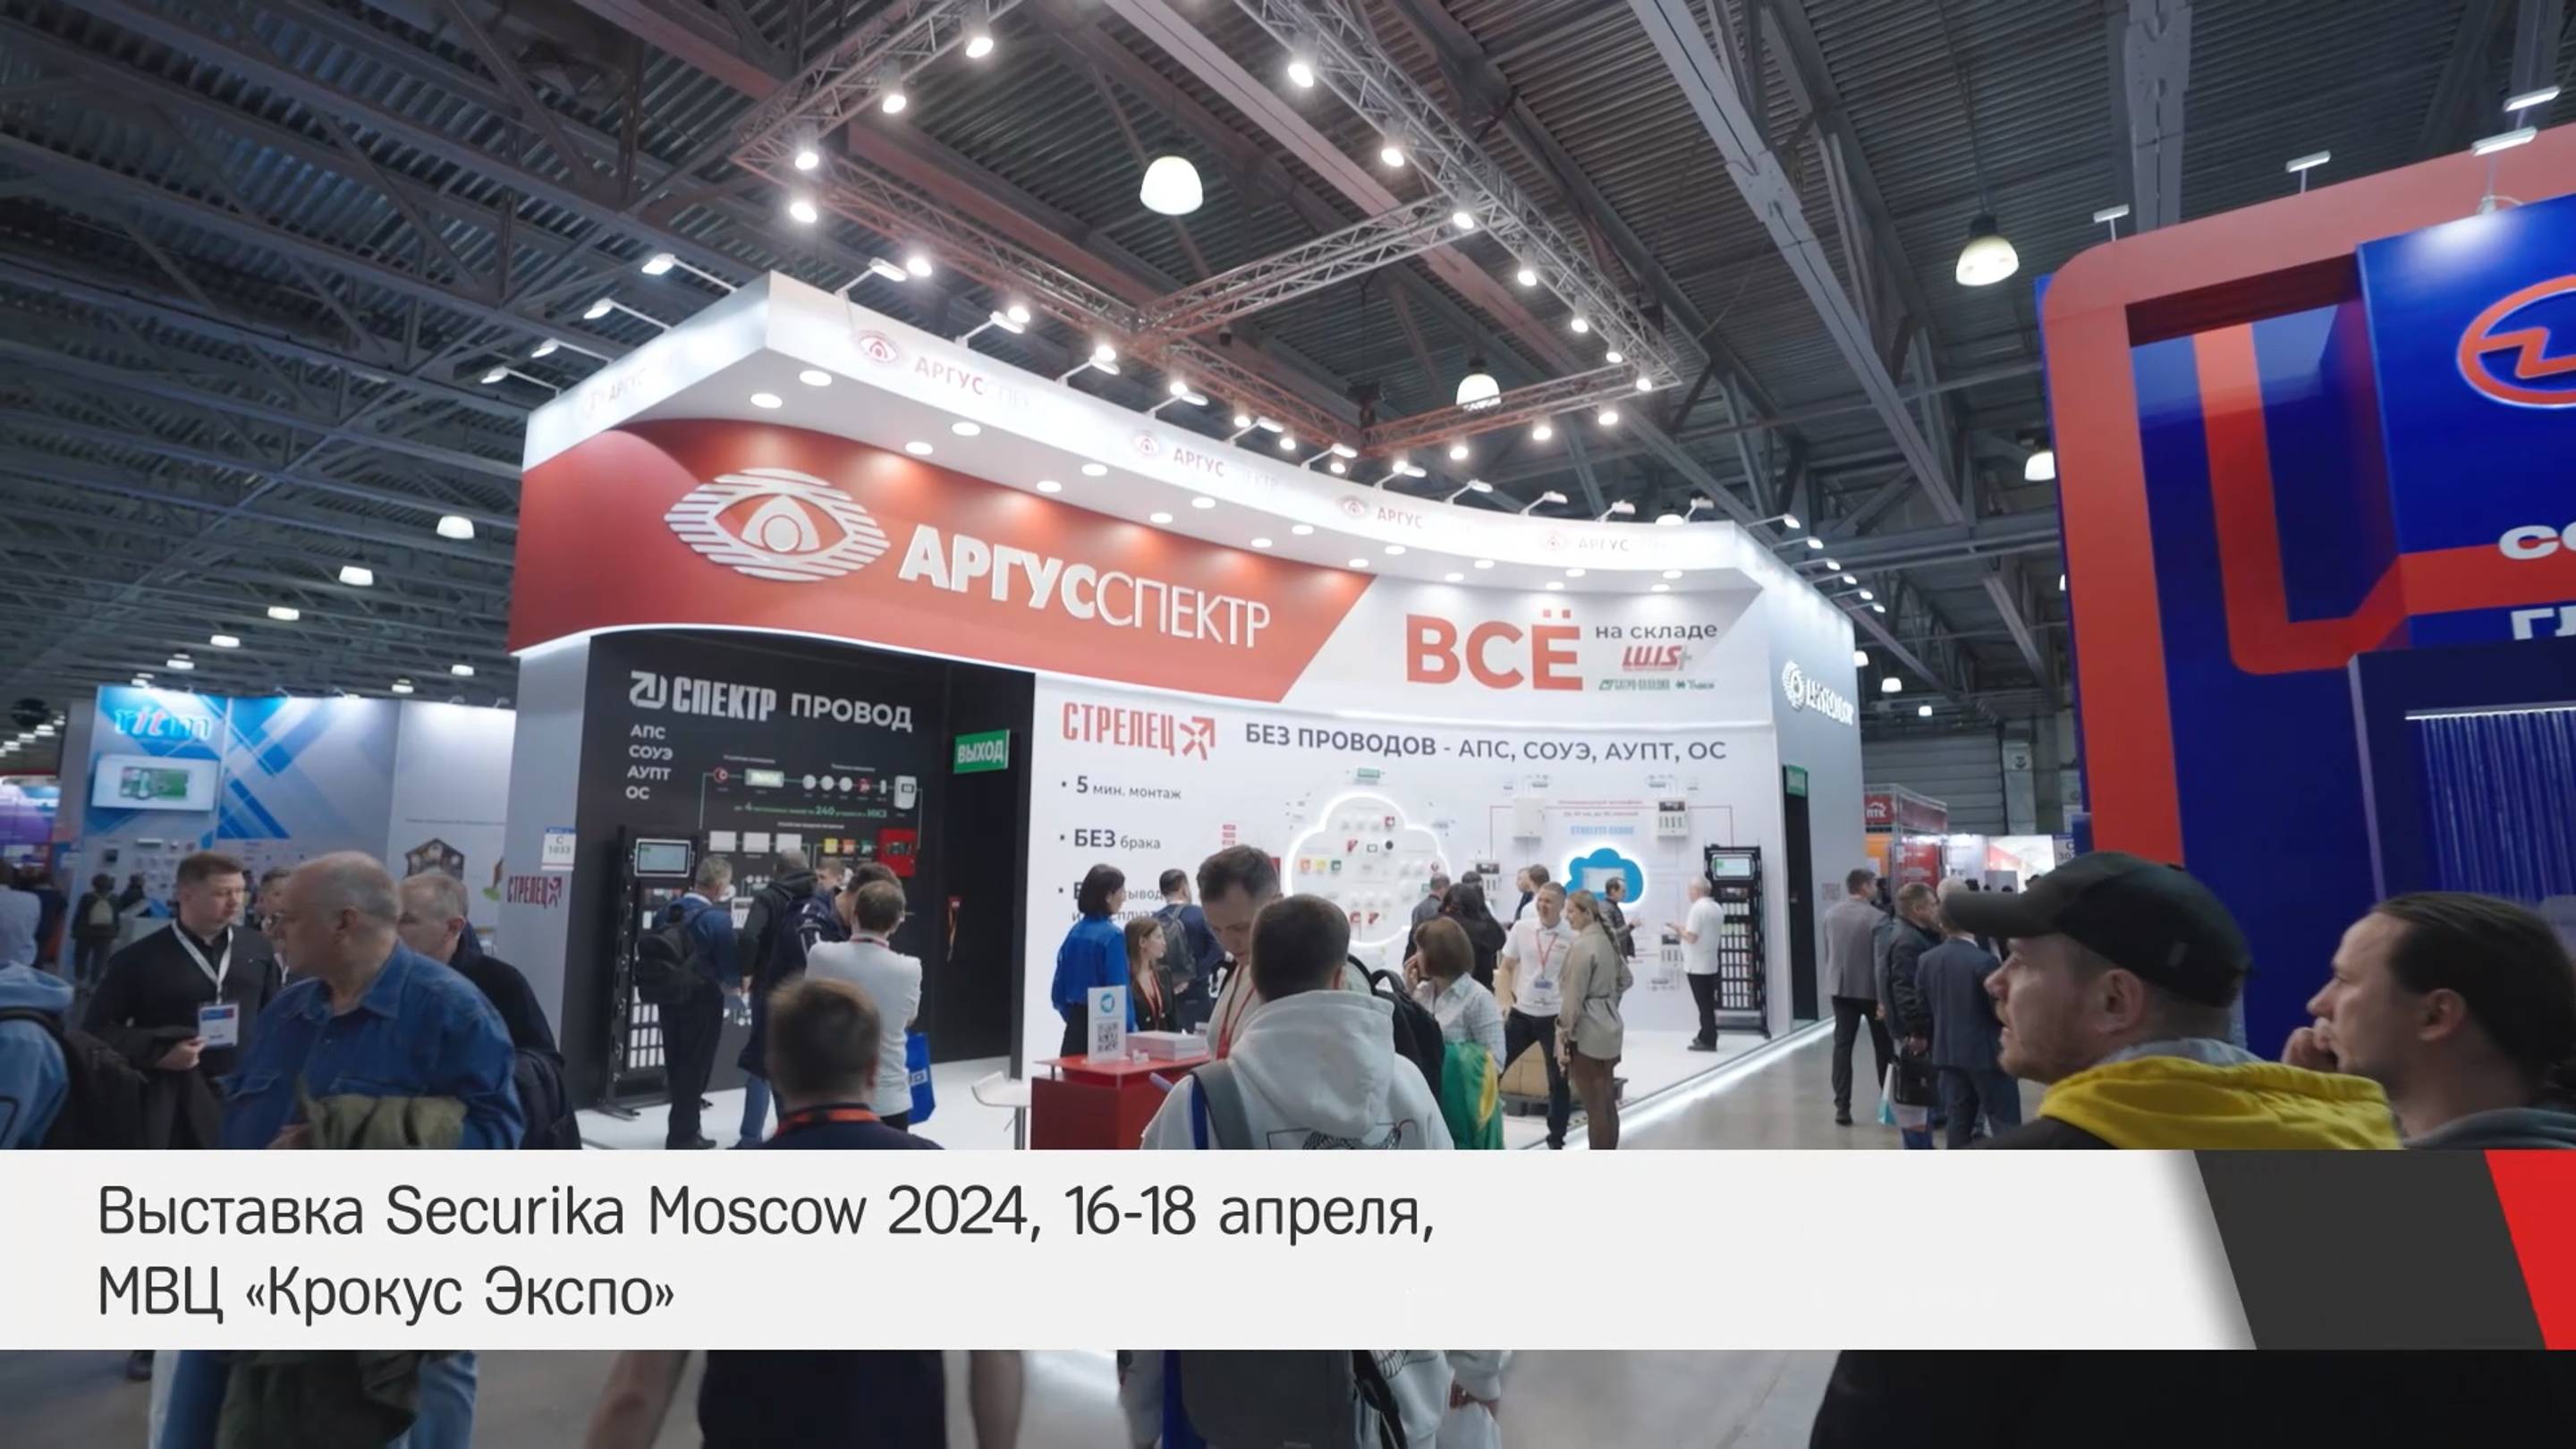 Аргус-Спектр на выставке Securika Moscow 2024